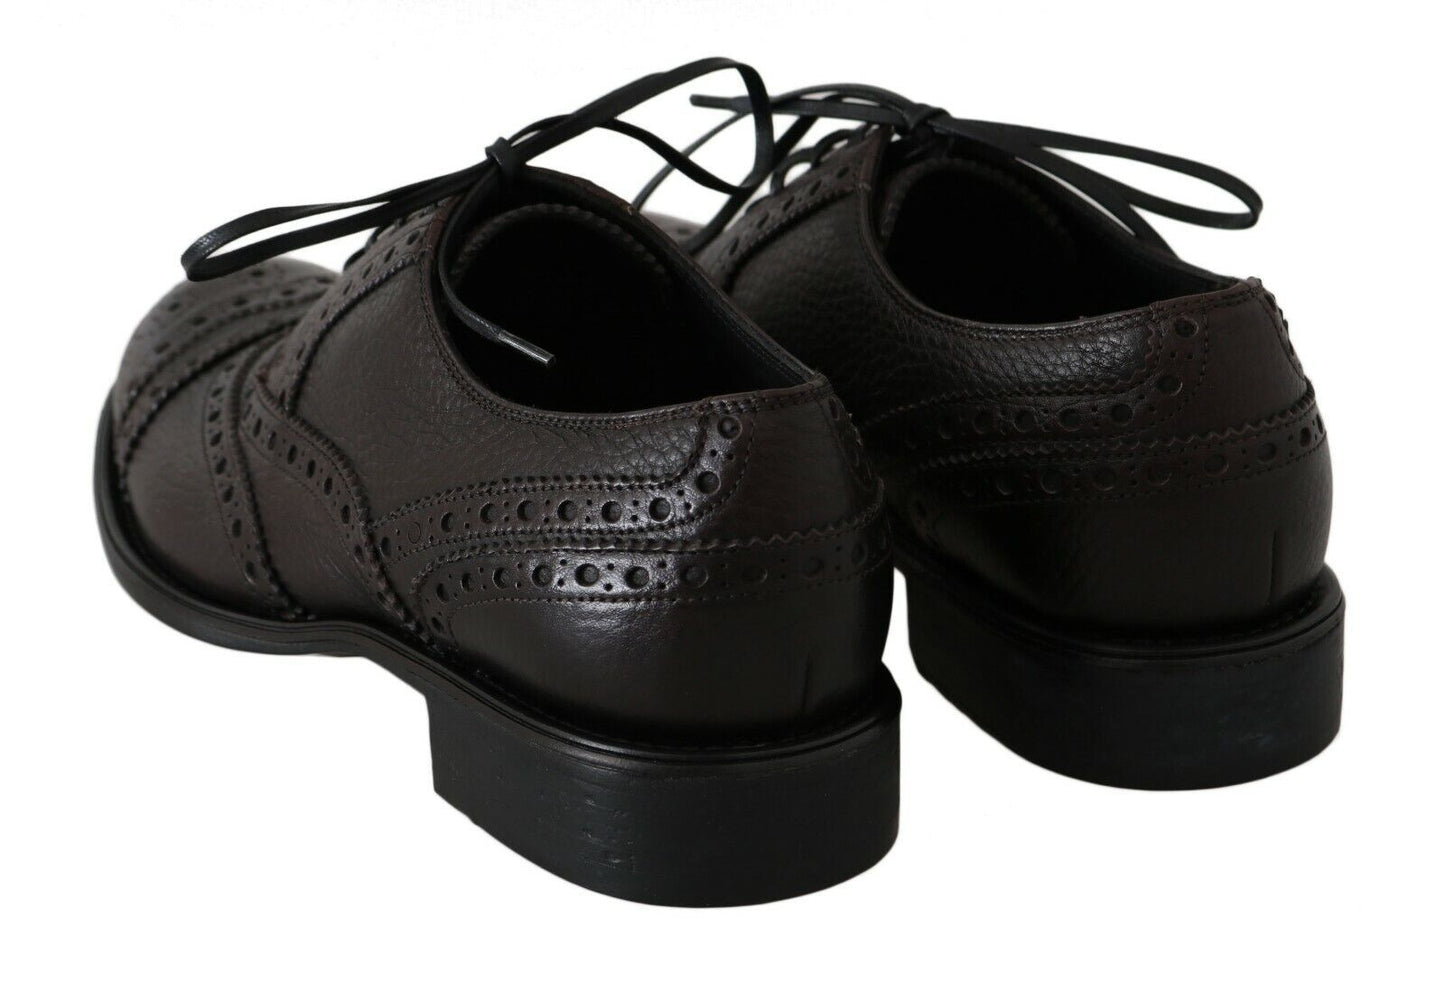 Dolce & Gabbana Brown Leder Wingtip Derby formelle Schuhe